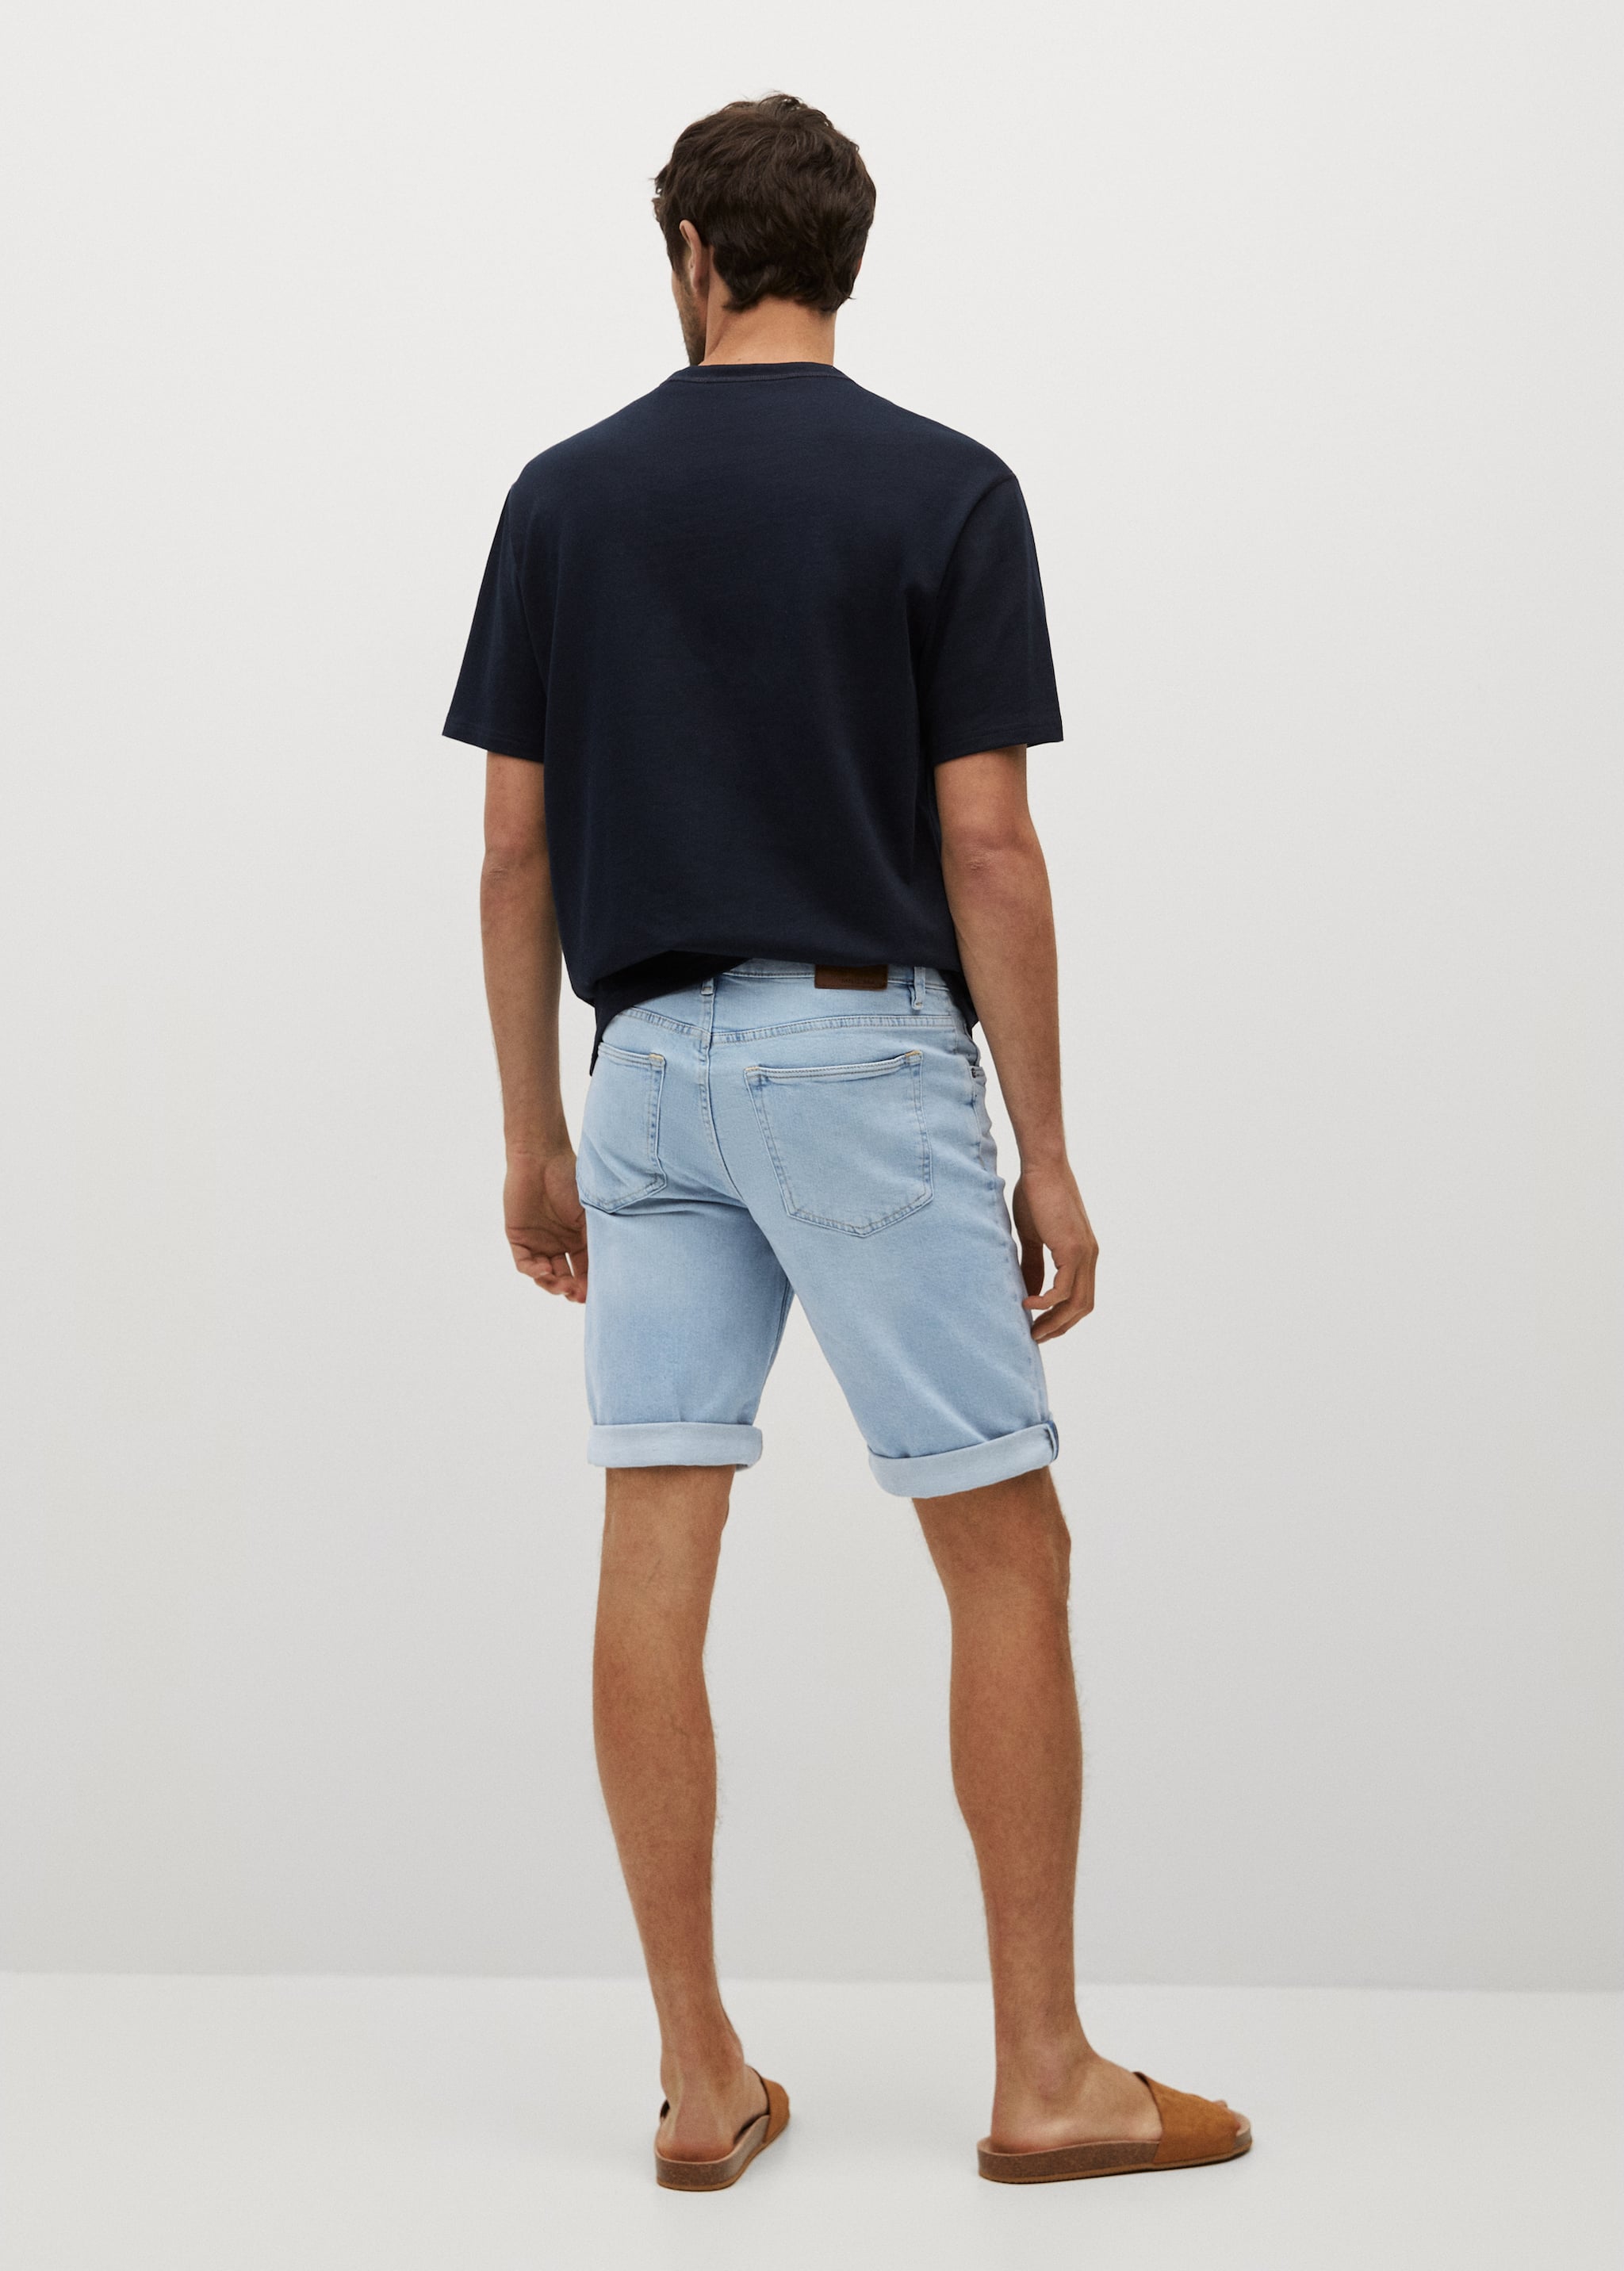 Jeans-Bermudashorts mit heller Waschung - Rückseite des Artikels